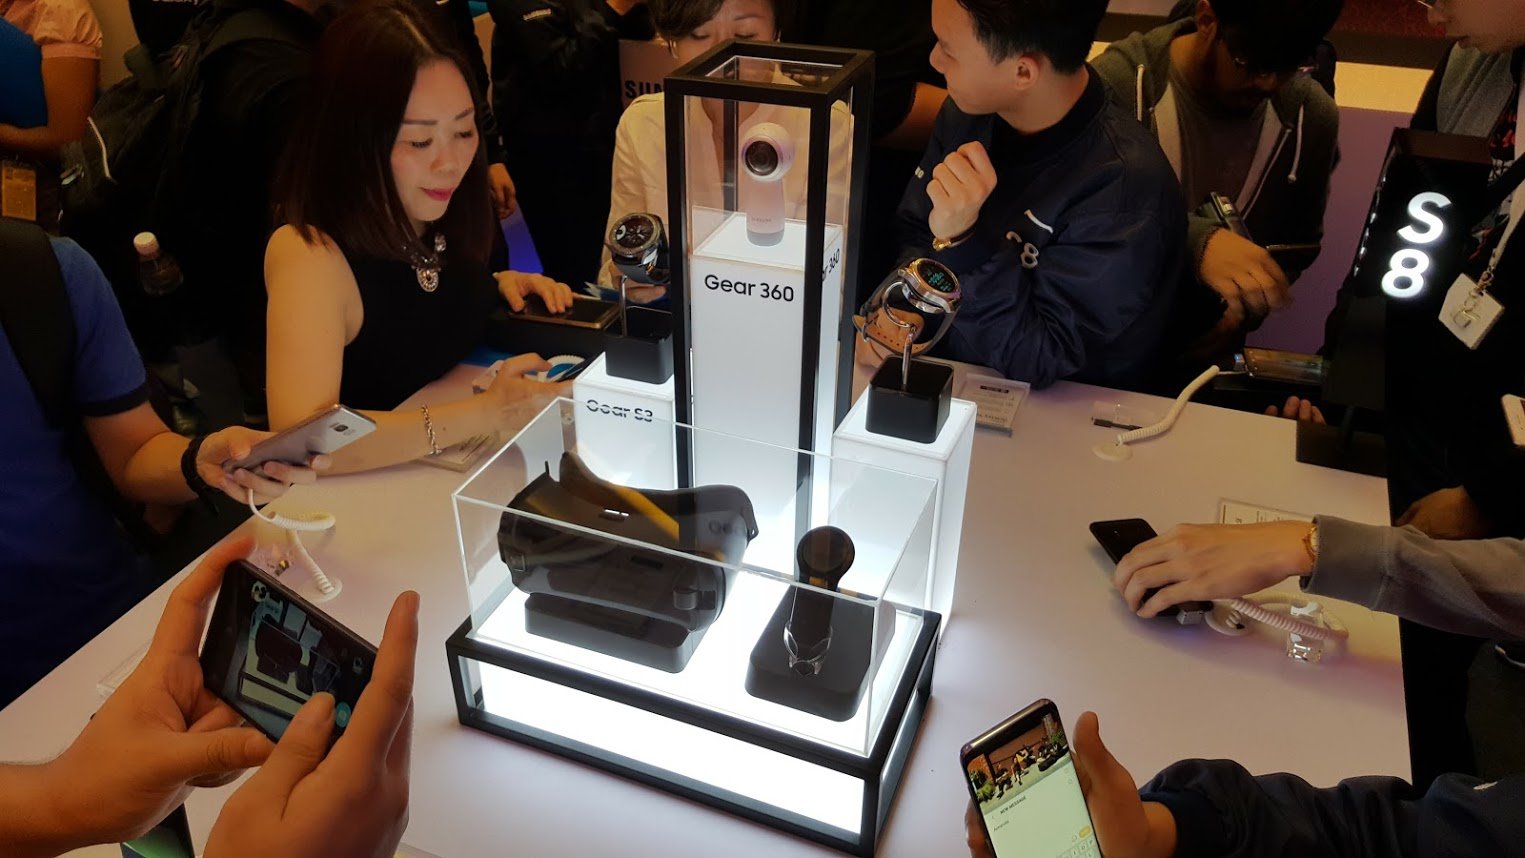 三星在推介礼体验区，展示了新一代360摄影机、Gear VR专用控制器等配件。